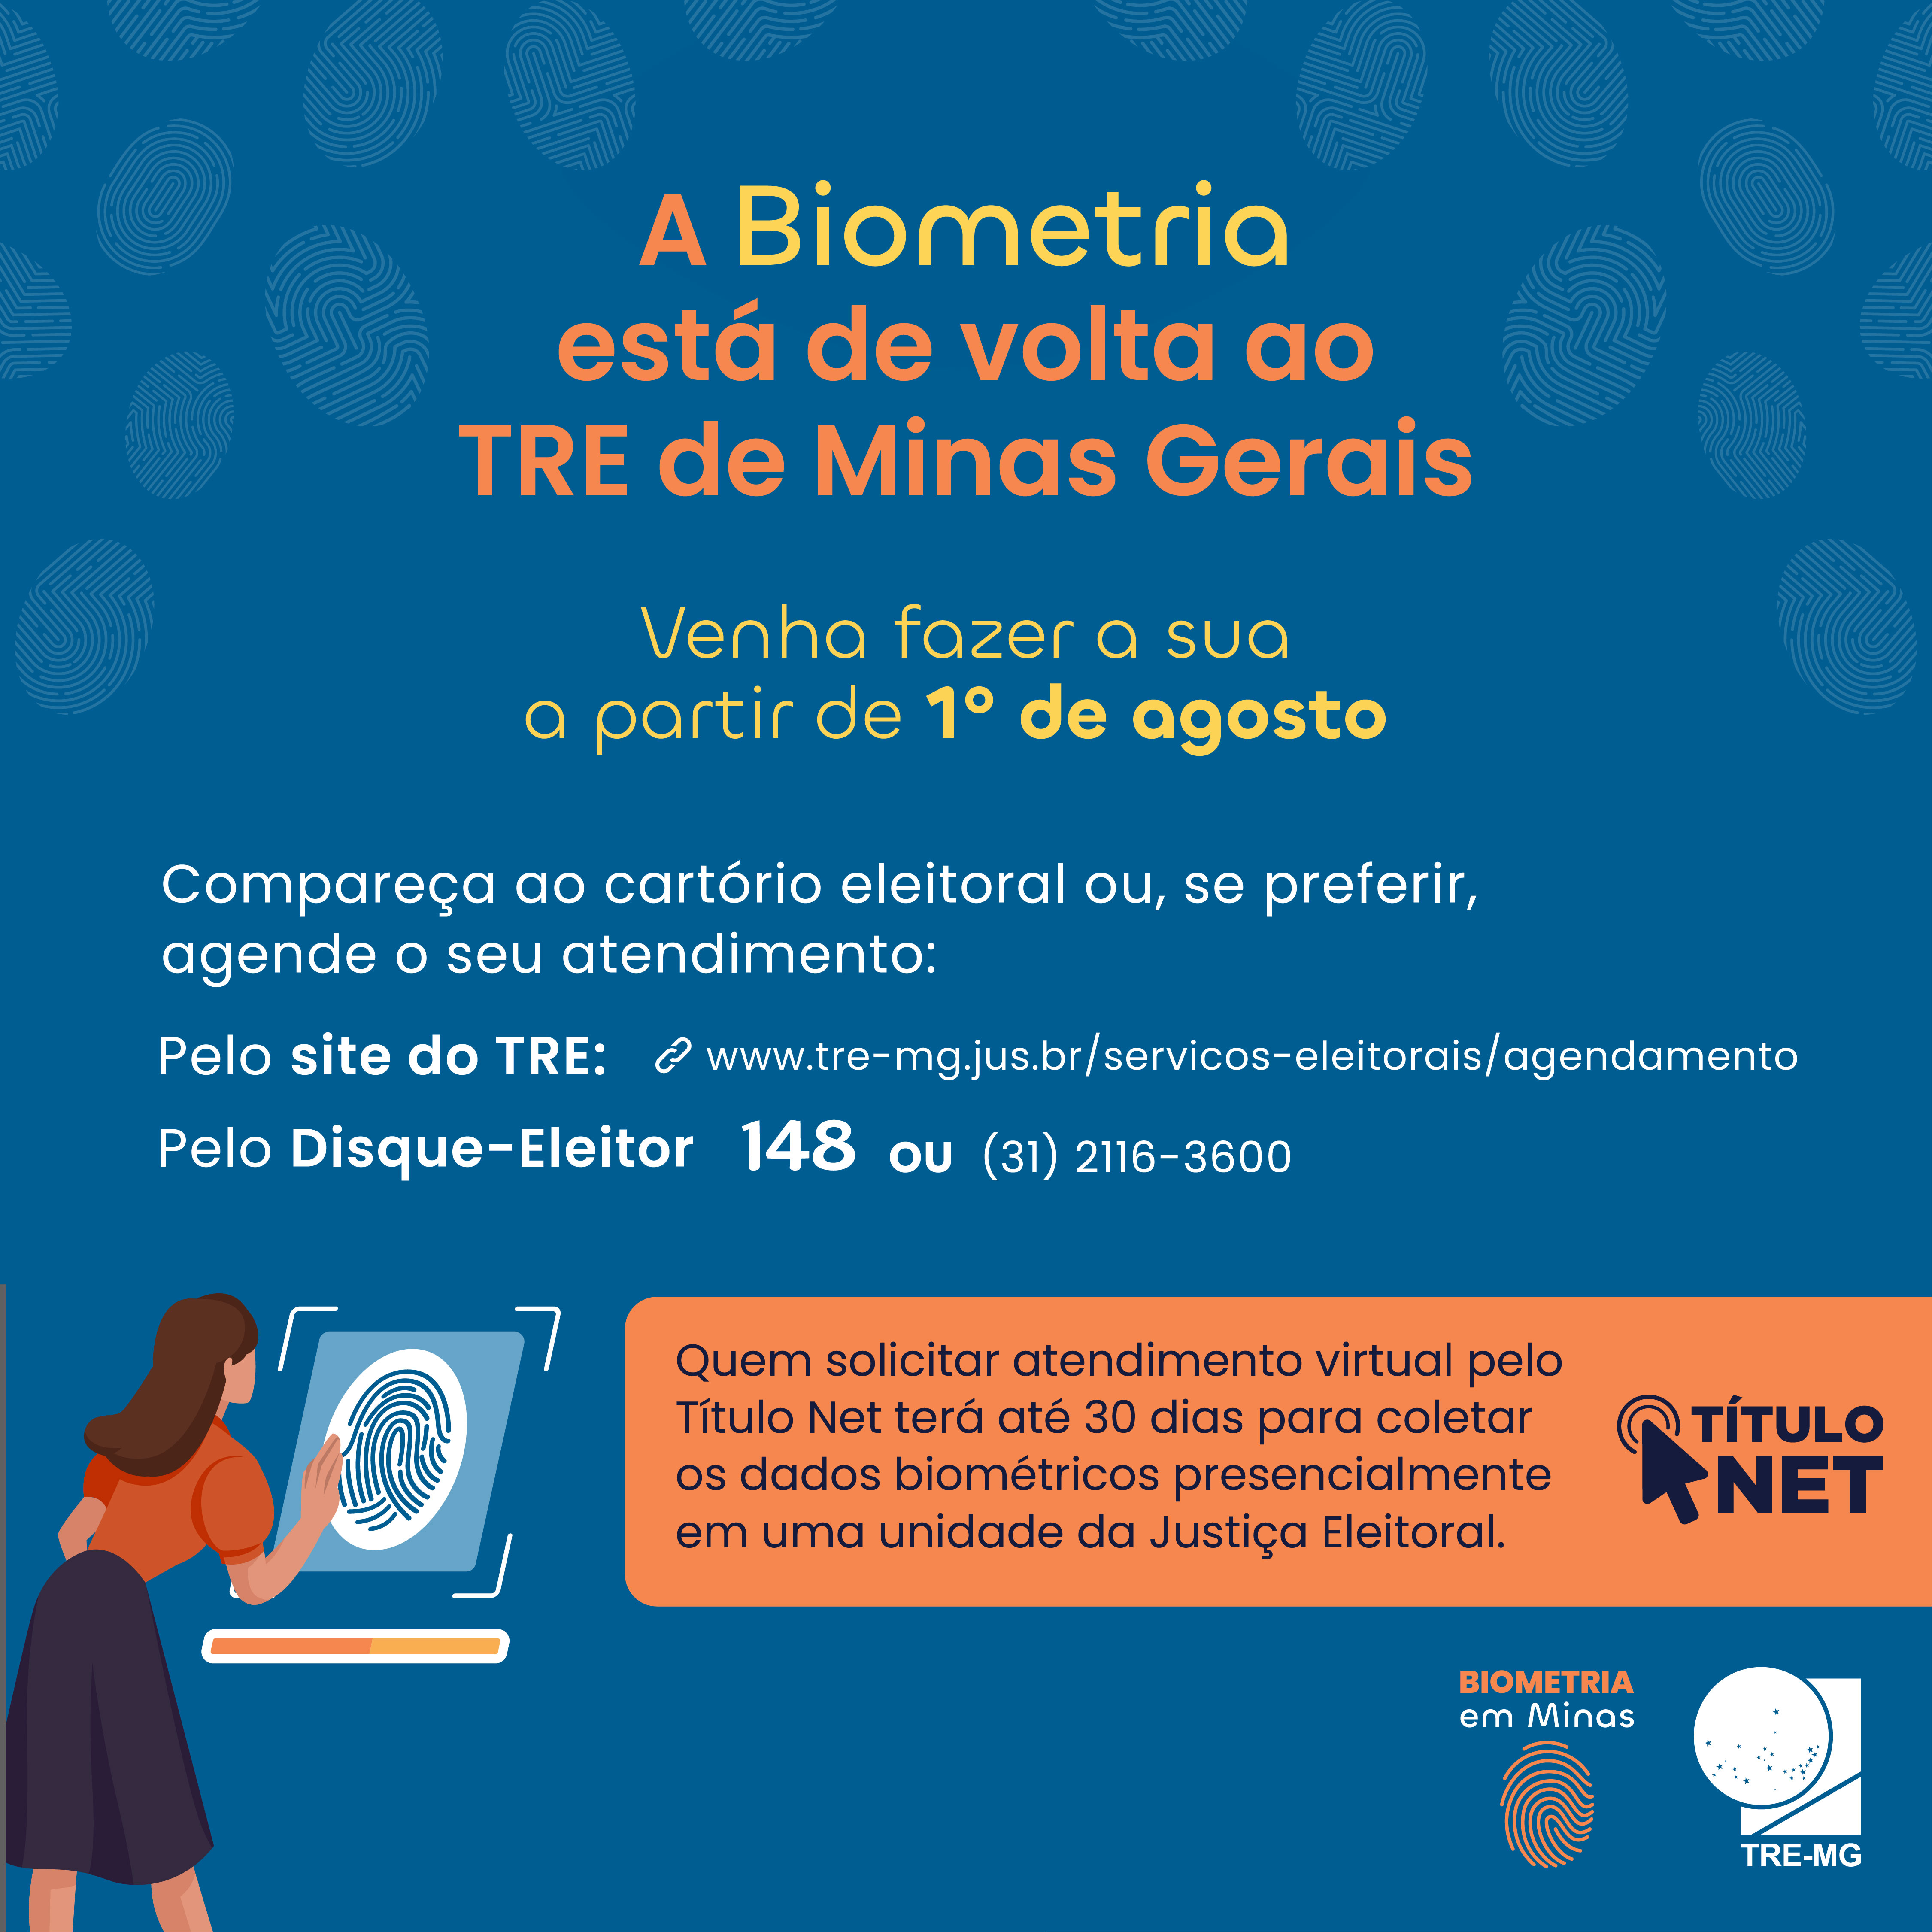 TRE-MG Post da campanha a Biometria está de volta